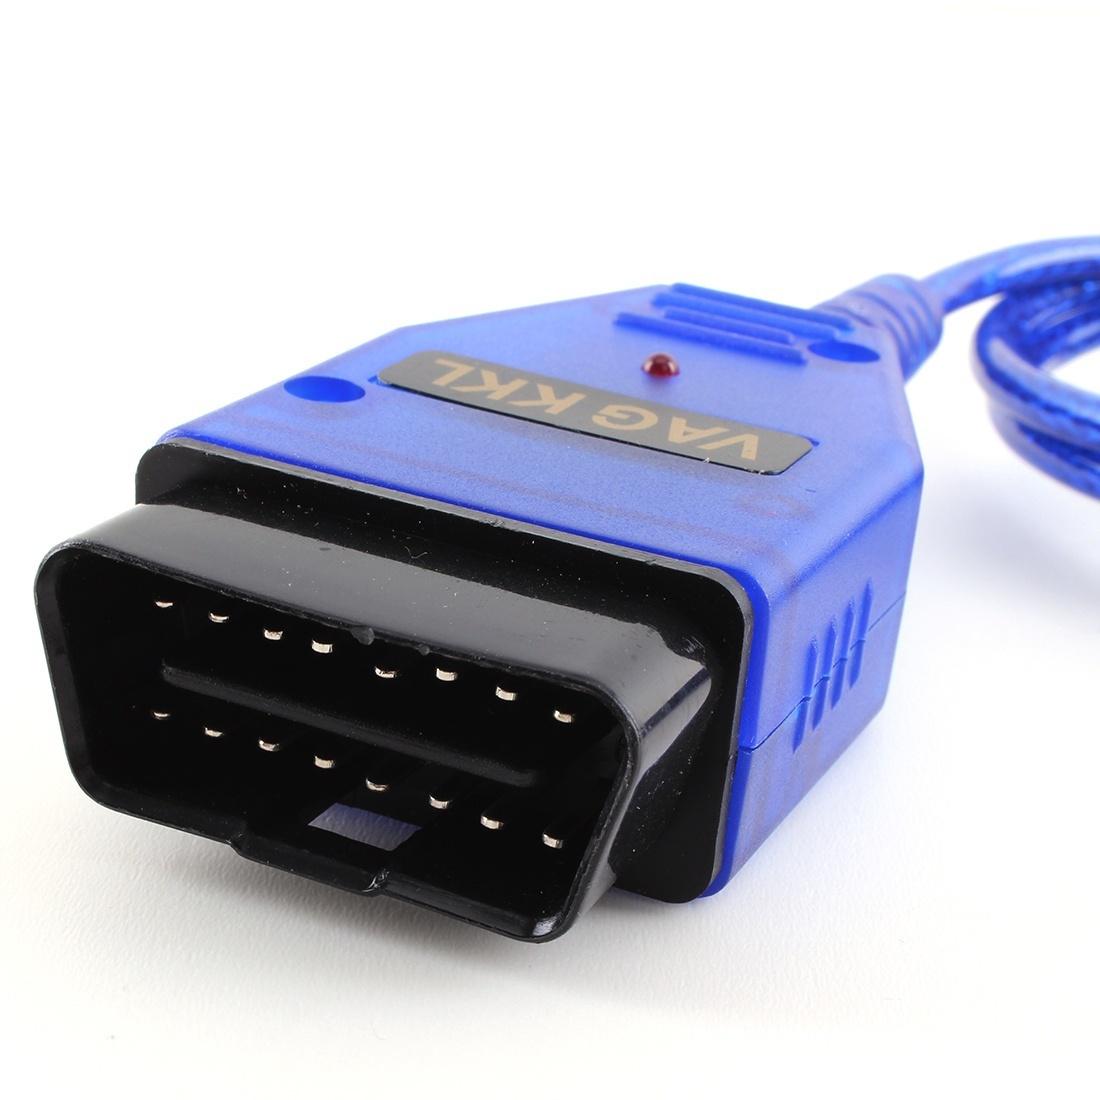 VAG-COM KKL 409.1 OBD2 DIAGNOSTIC Cable Scanner Scan Tool USB Cable For Audi VW Golf